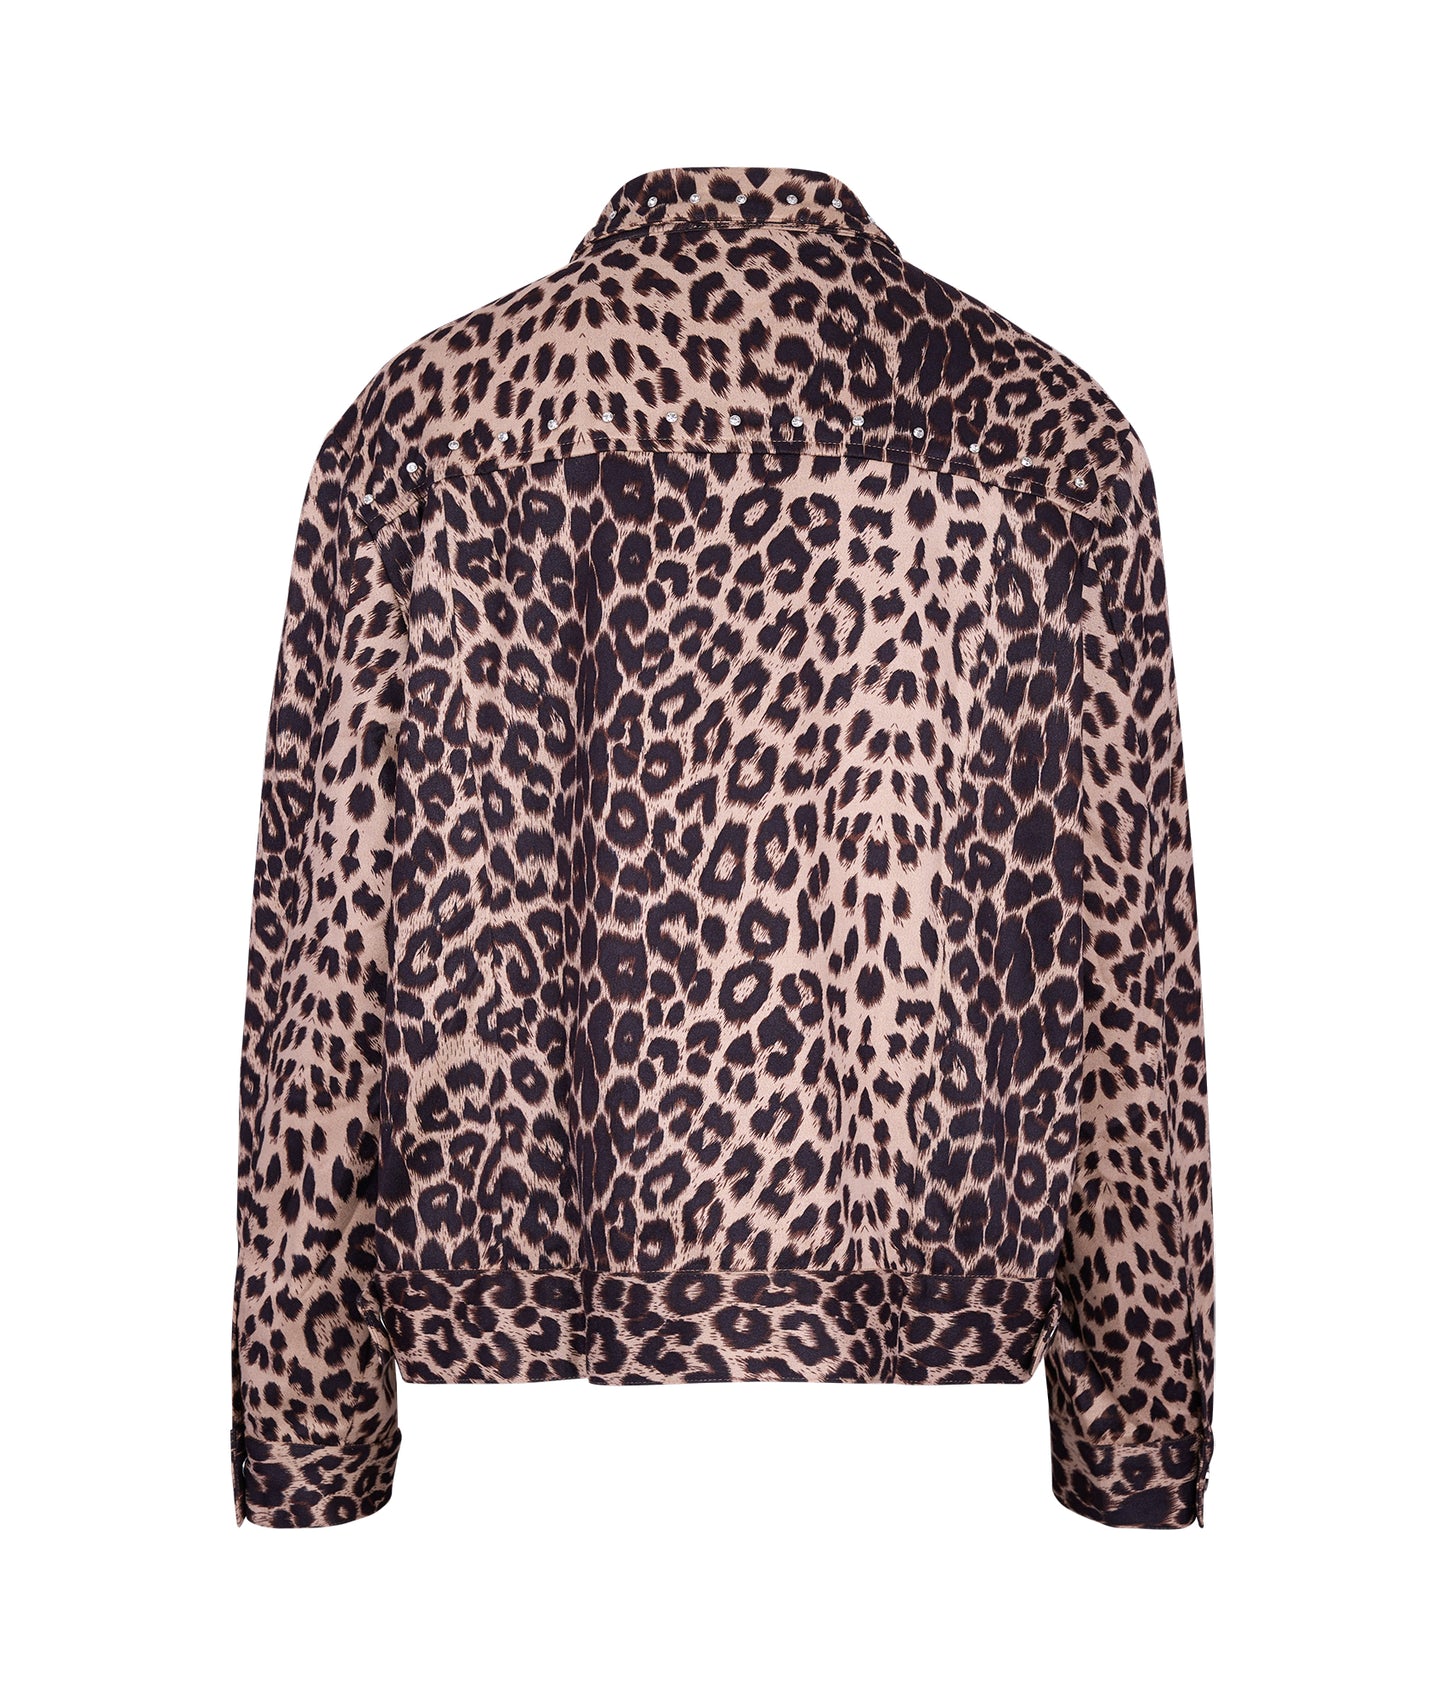 Cheetah jacket